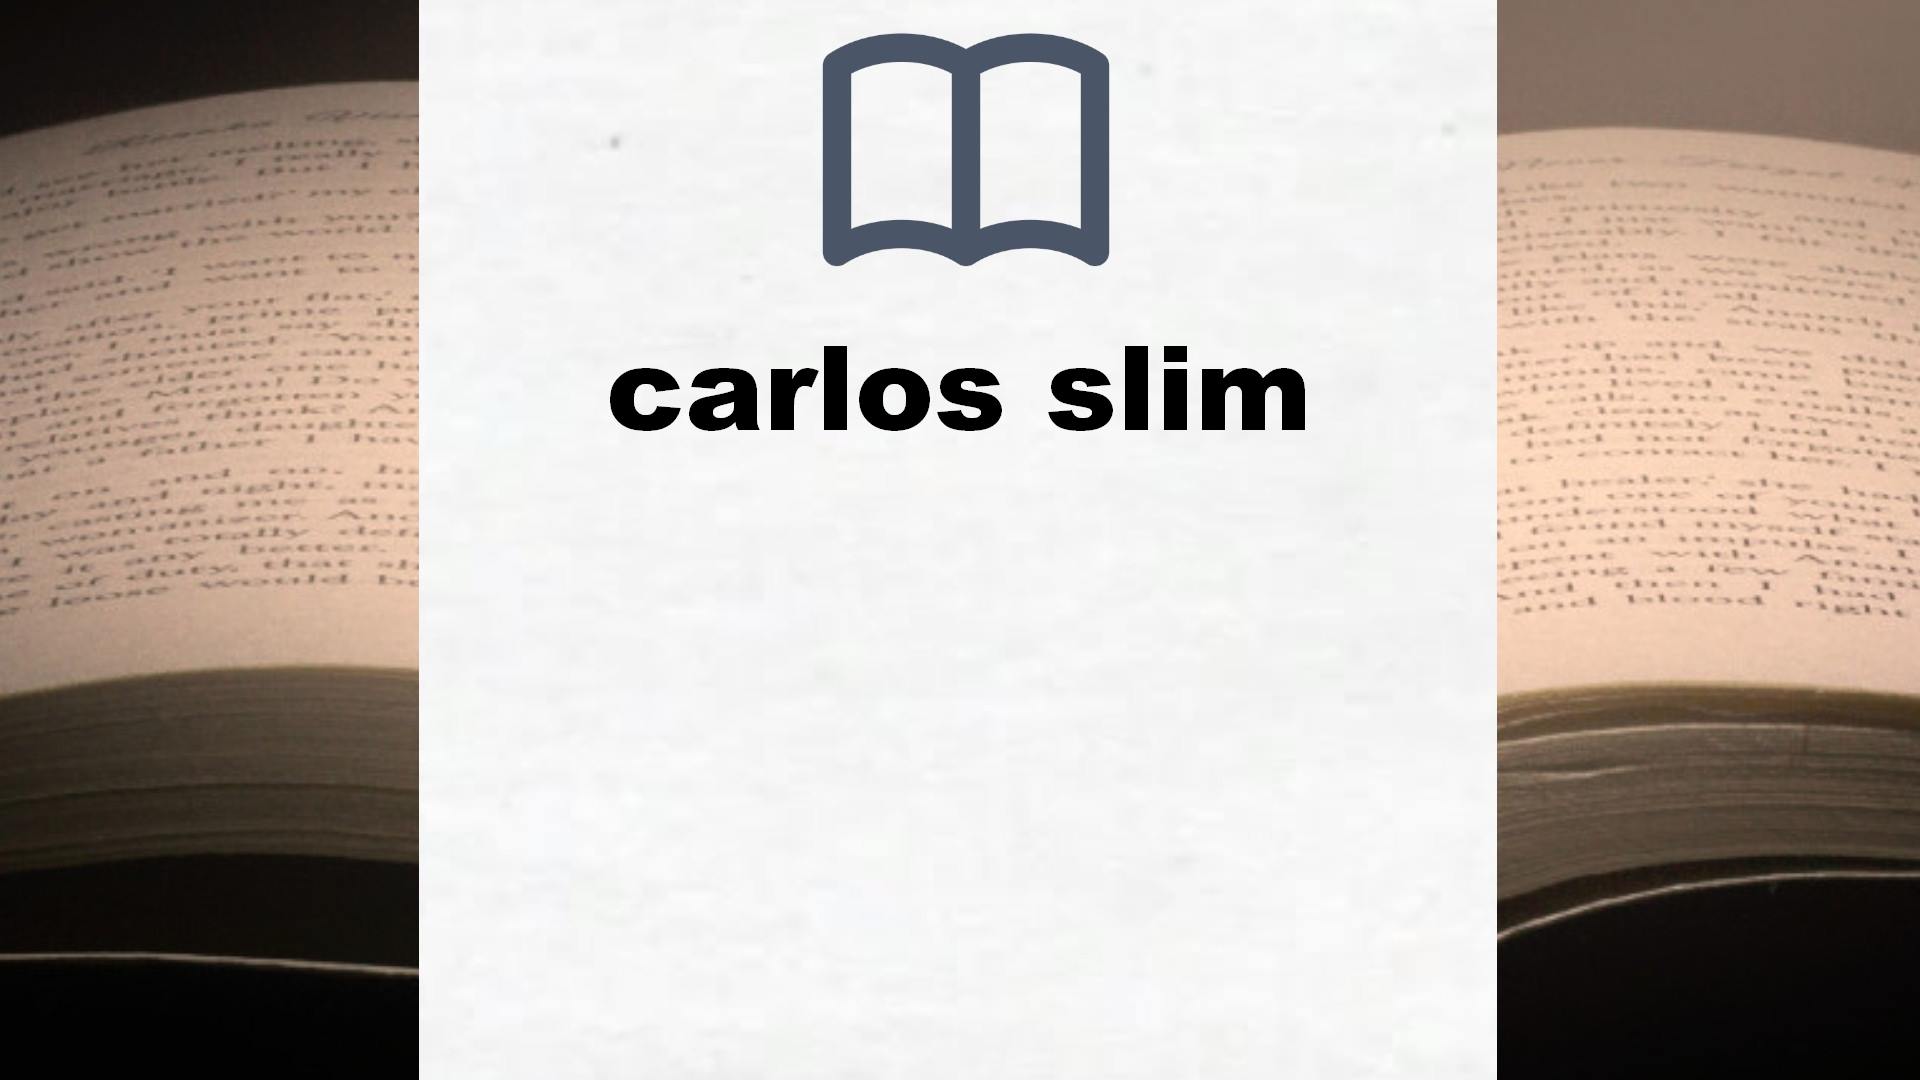 Libros sobre carlos slim